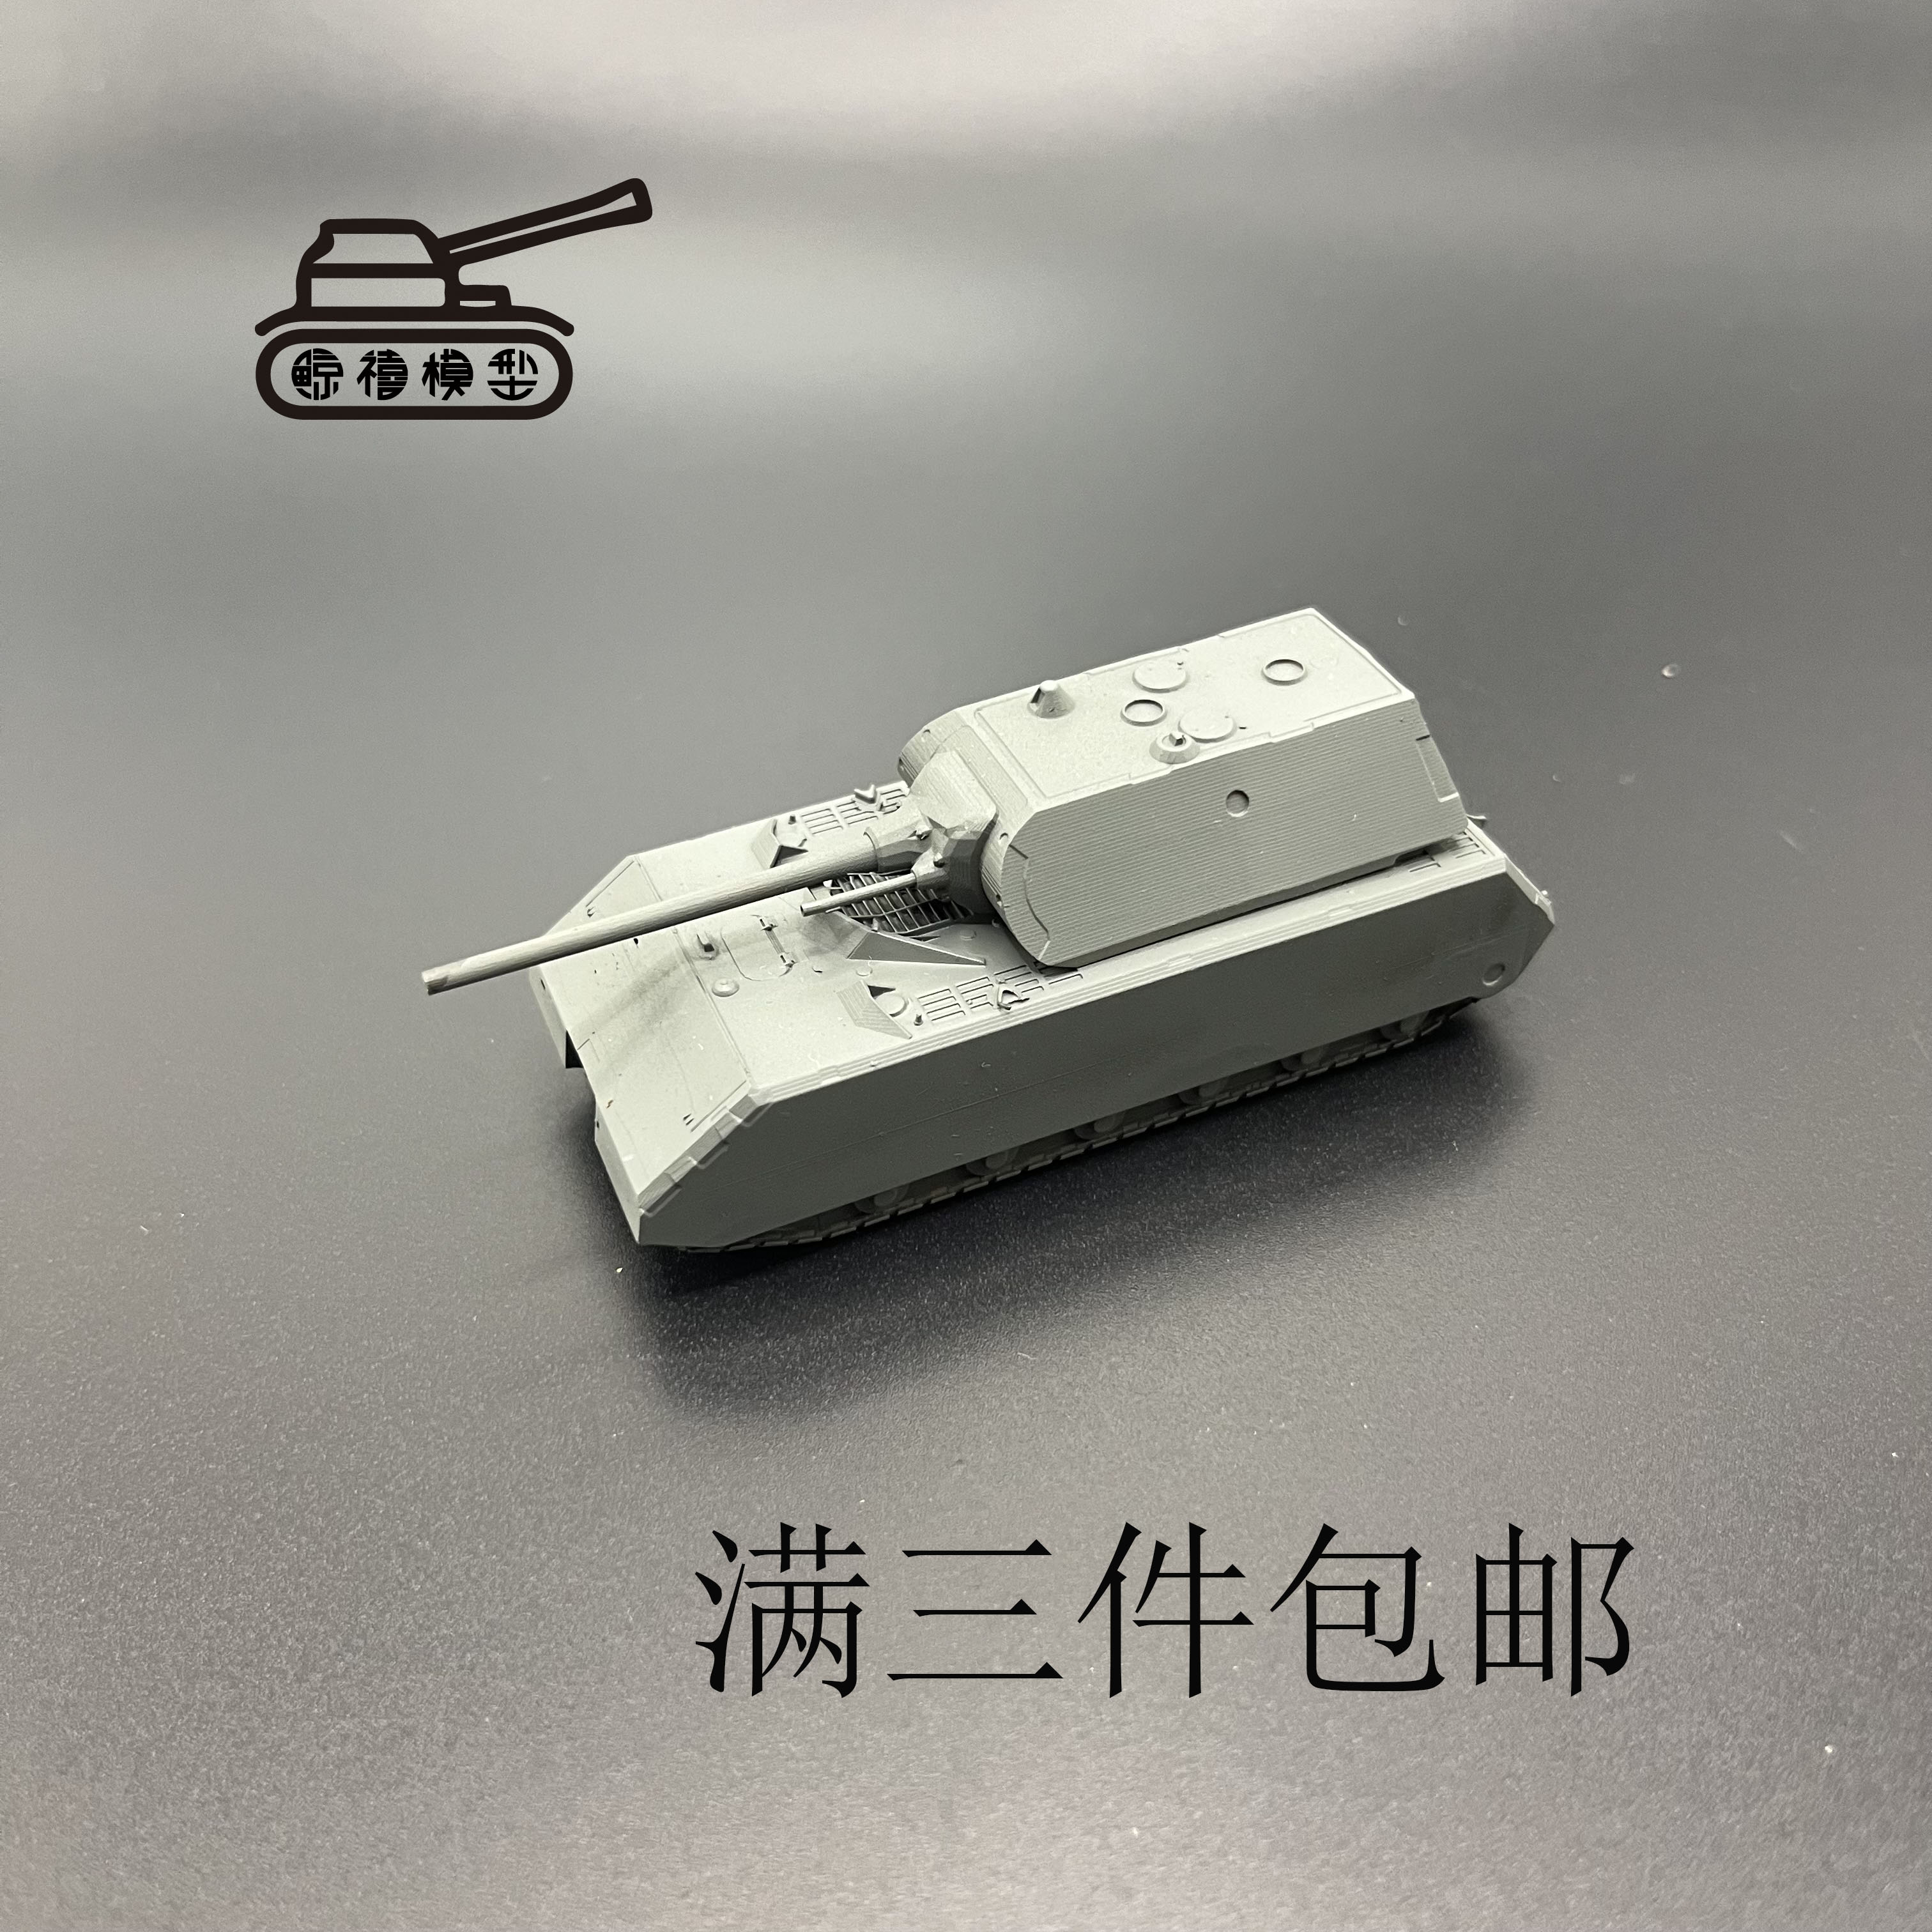 鼠式坦克  鼠式重型坦克  重型坦克  微缩模型  军事模型  坦克